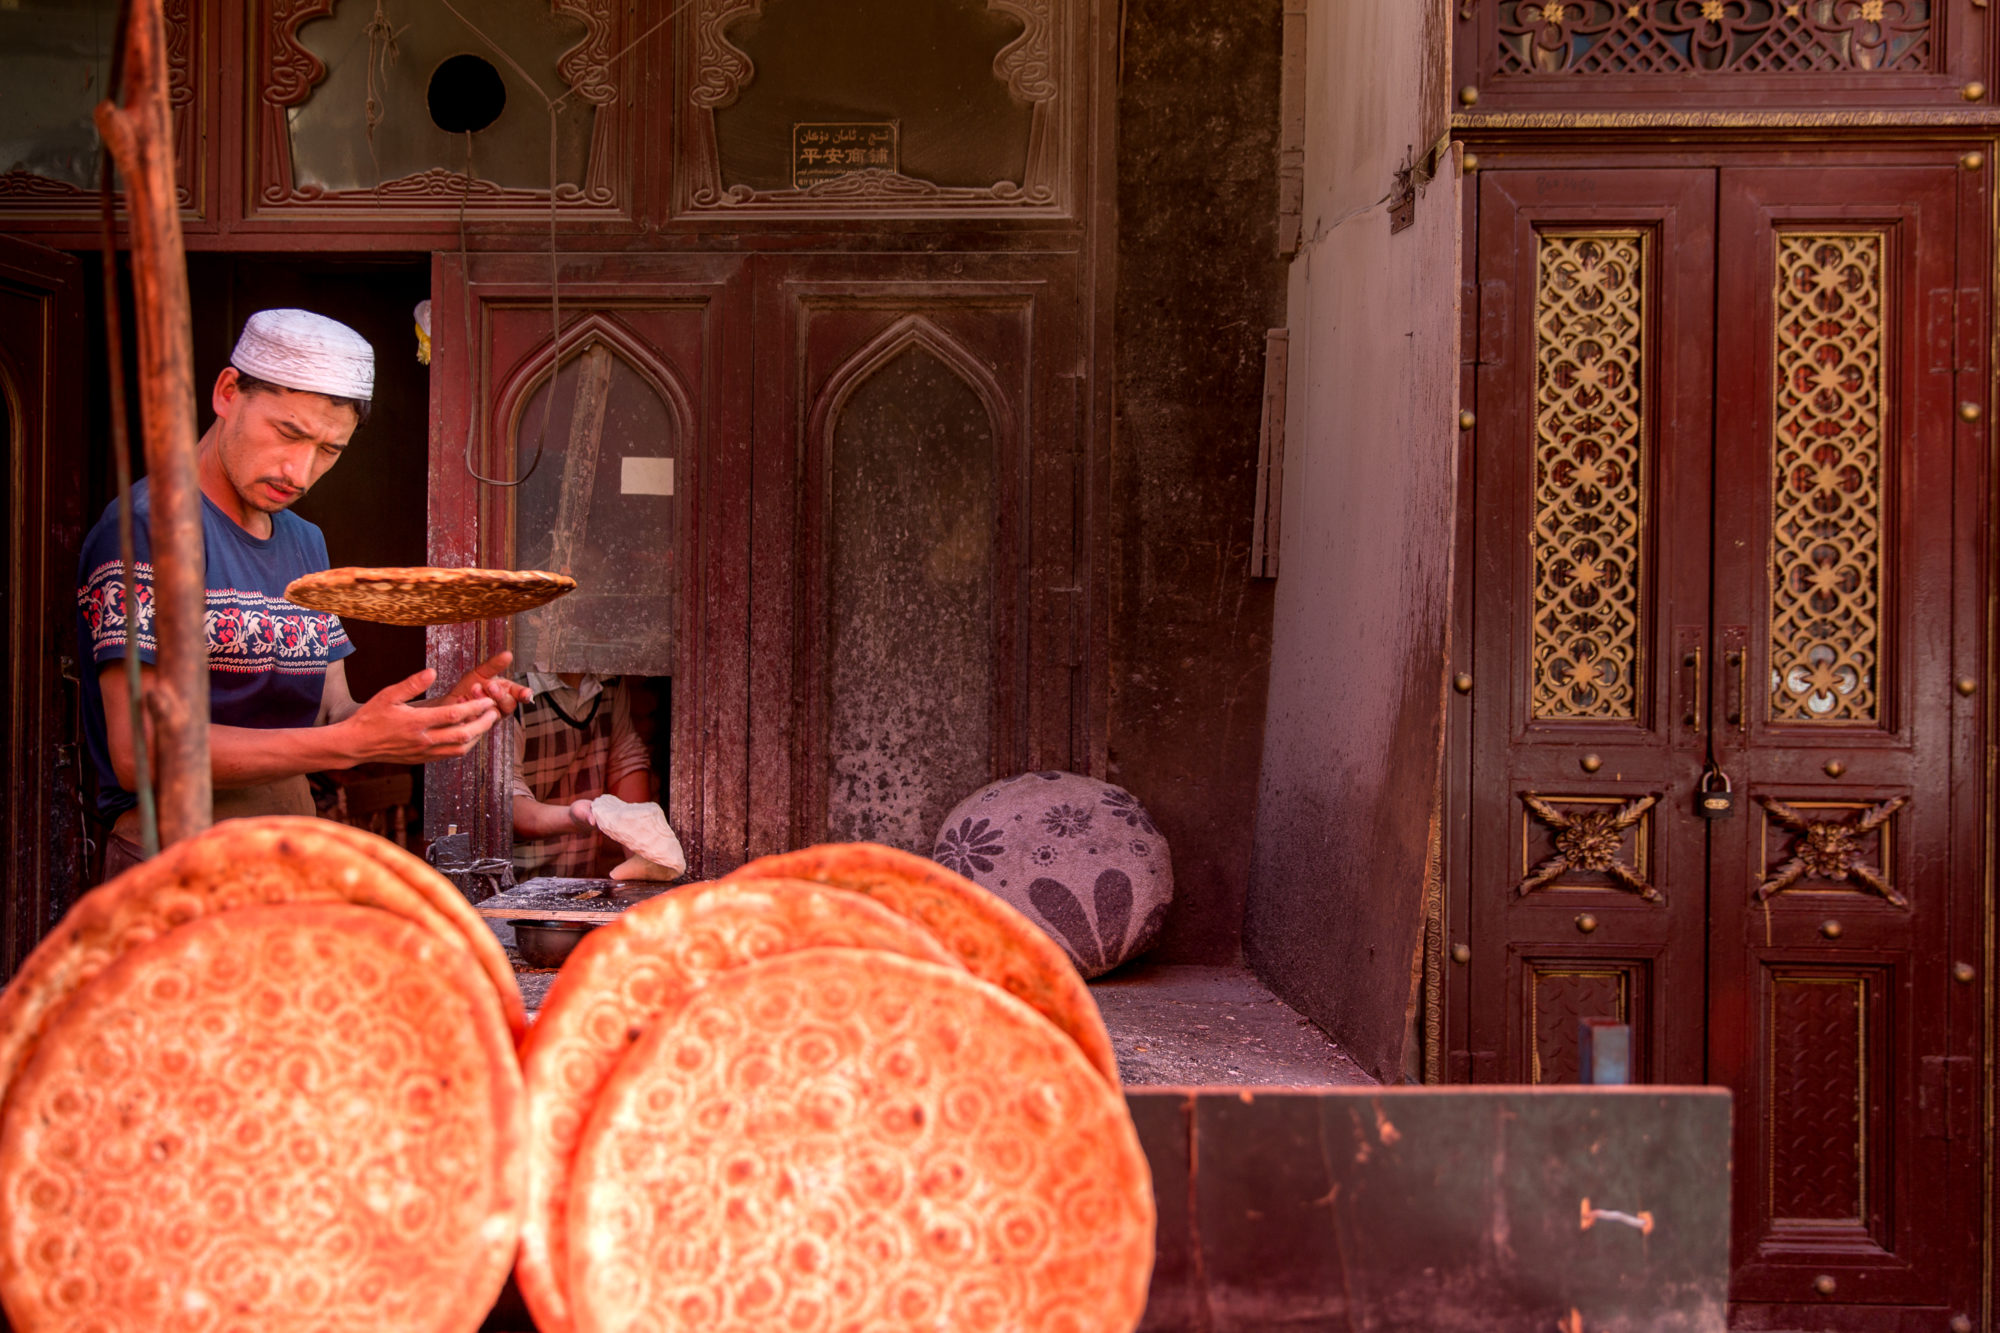 Foto di Kashgar. Un uomo prepara un particolare pane chiamato Nang